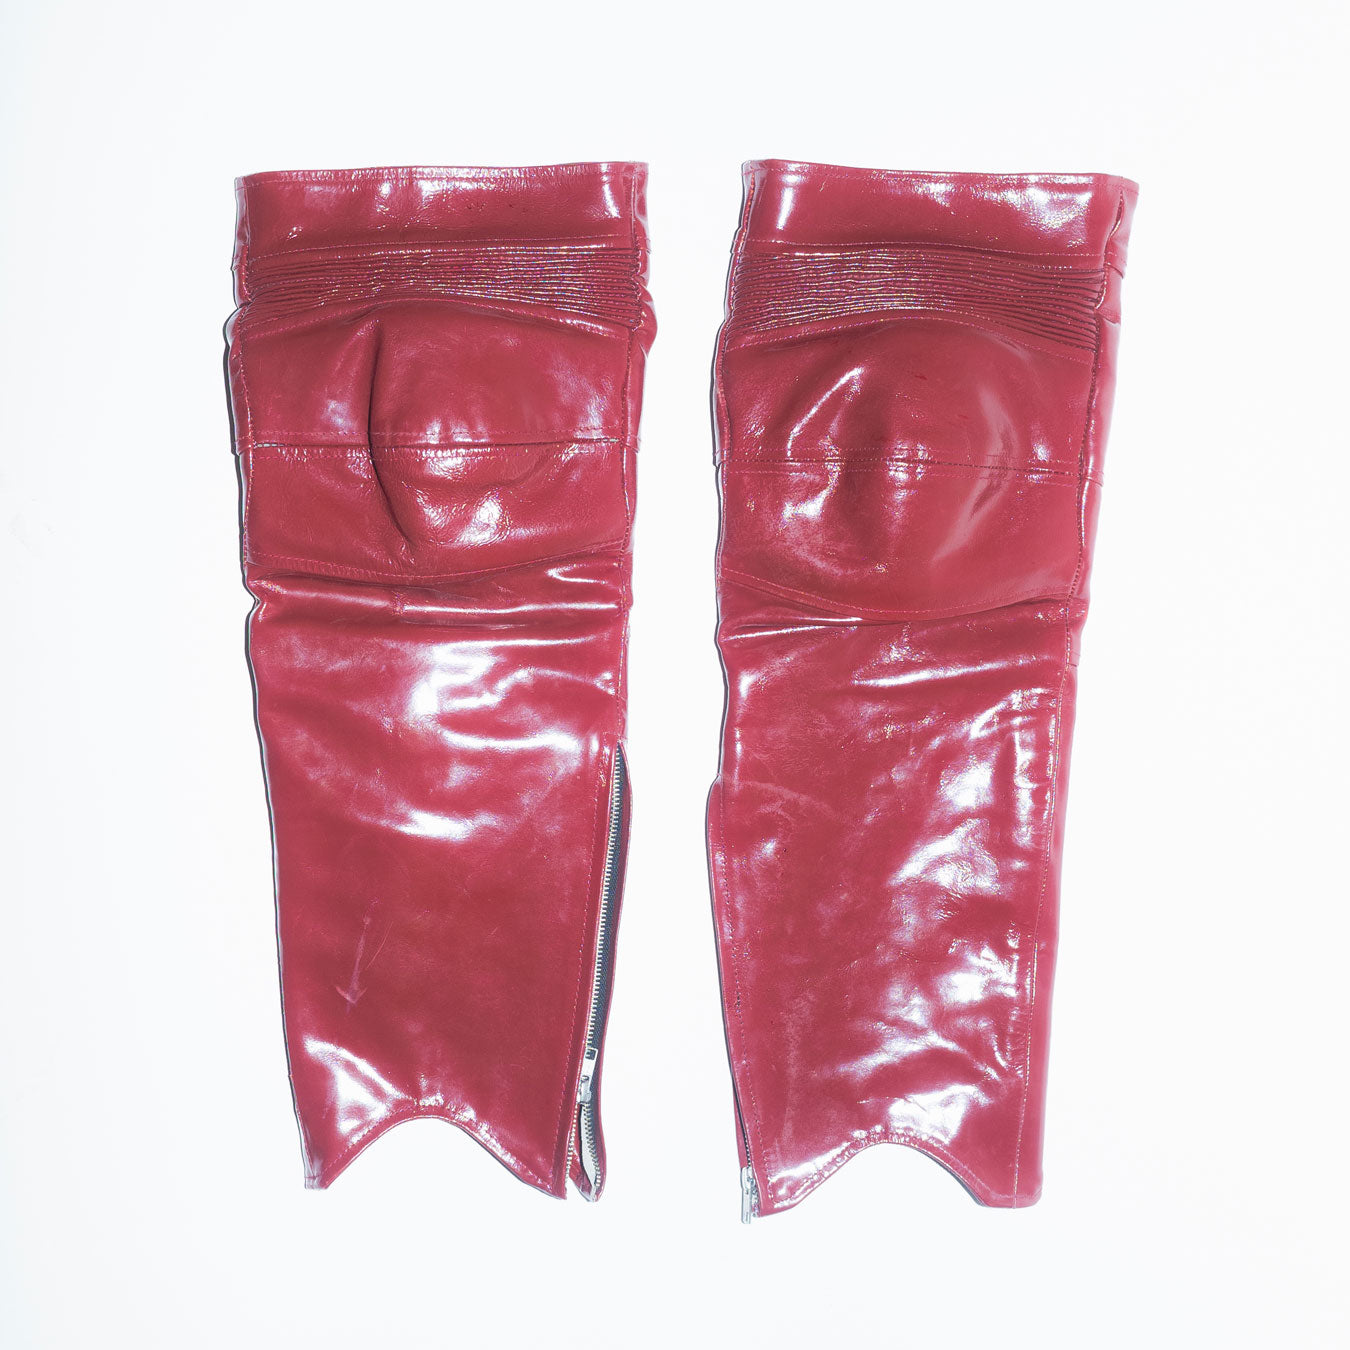 Runway Biker Kneecap Chaps in Red Patent Leather